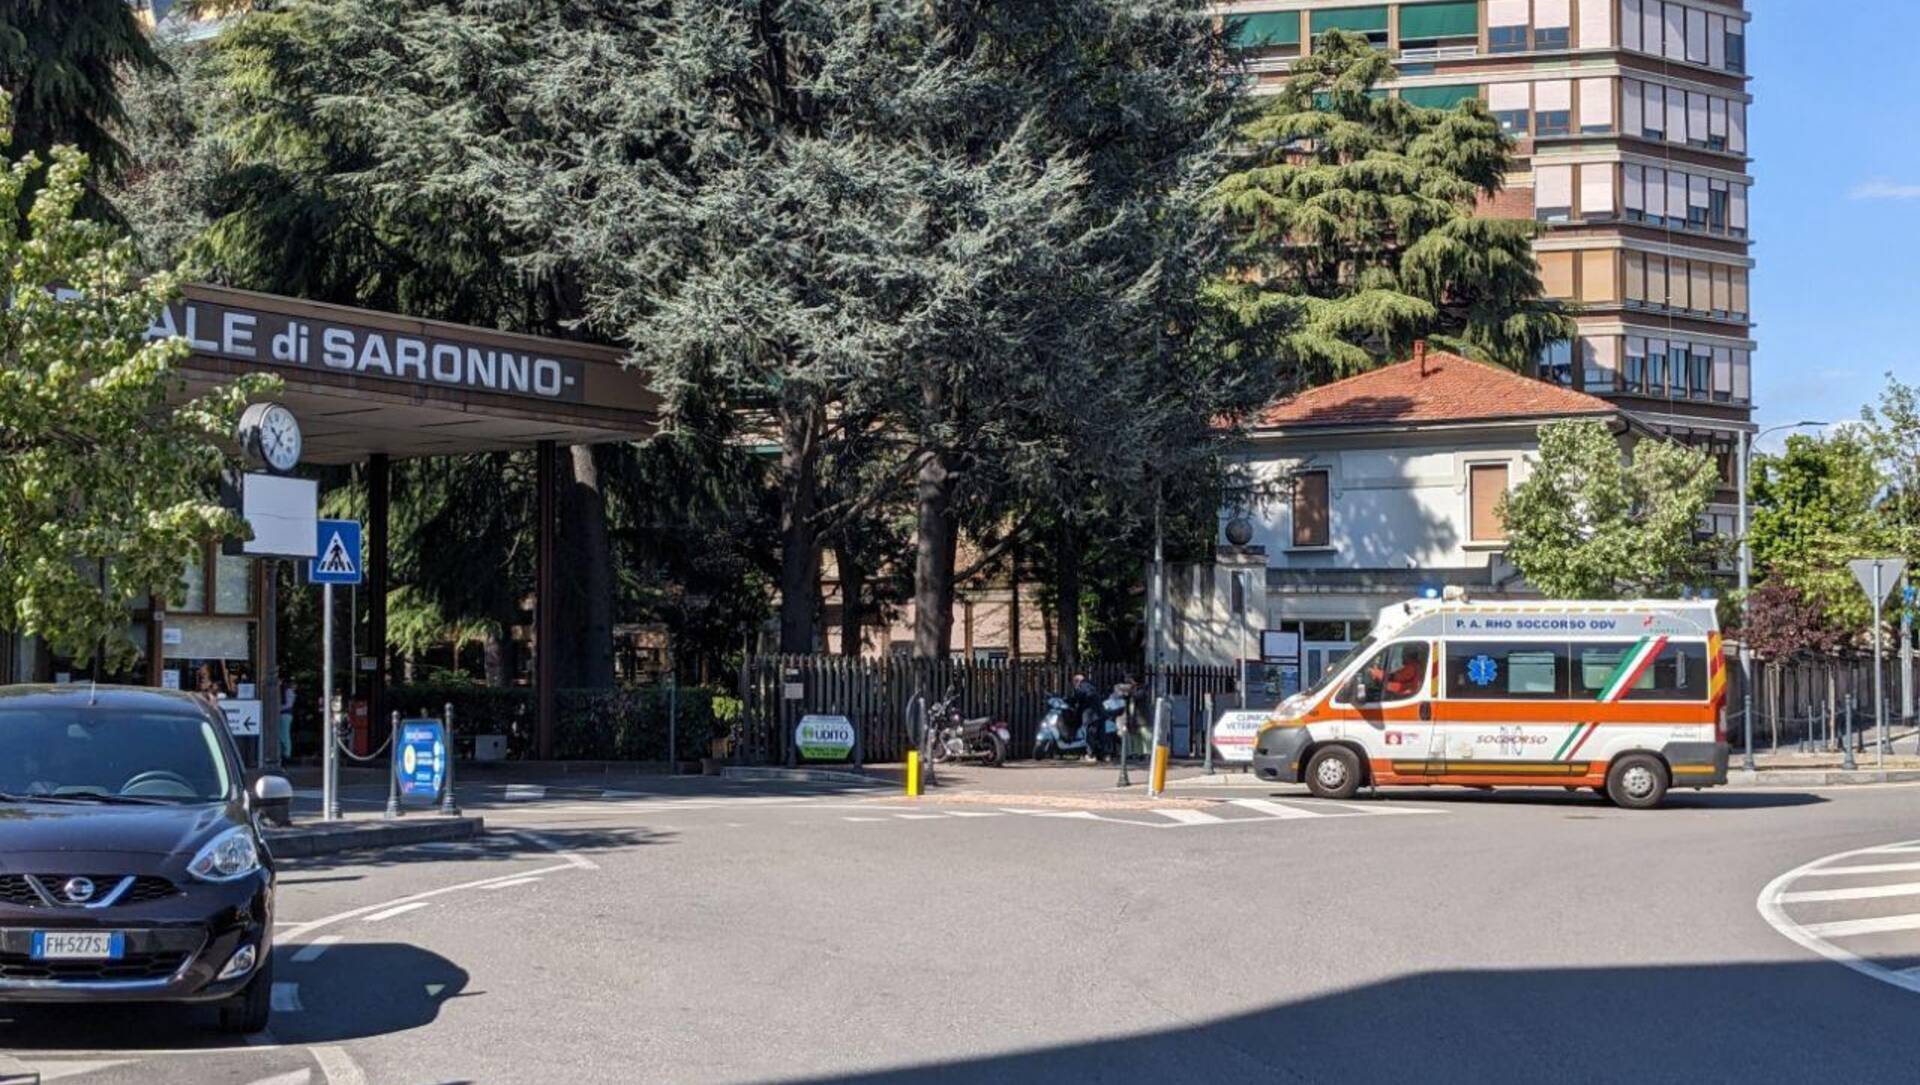 Covid in Lombardia, i dati si alzano ancora: più malati, più ricoverati in ospedale